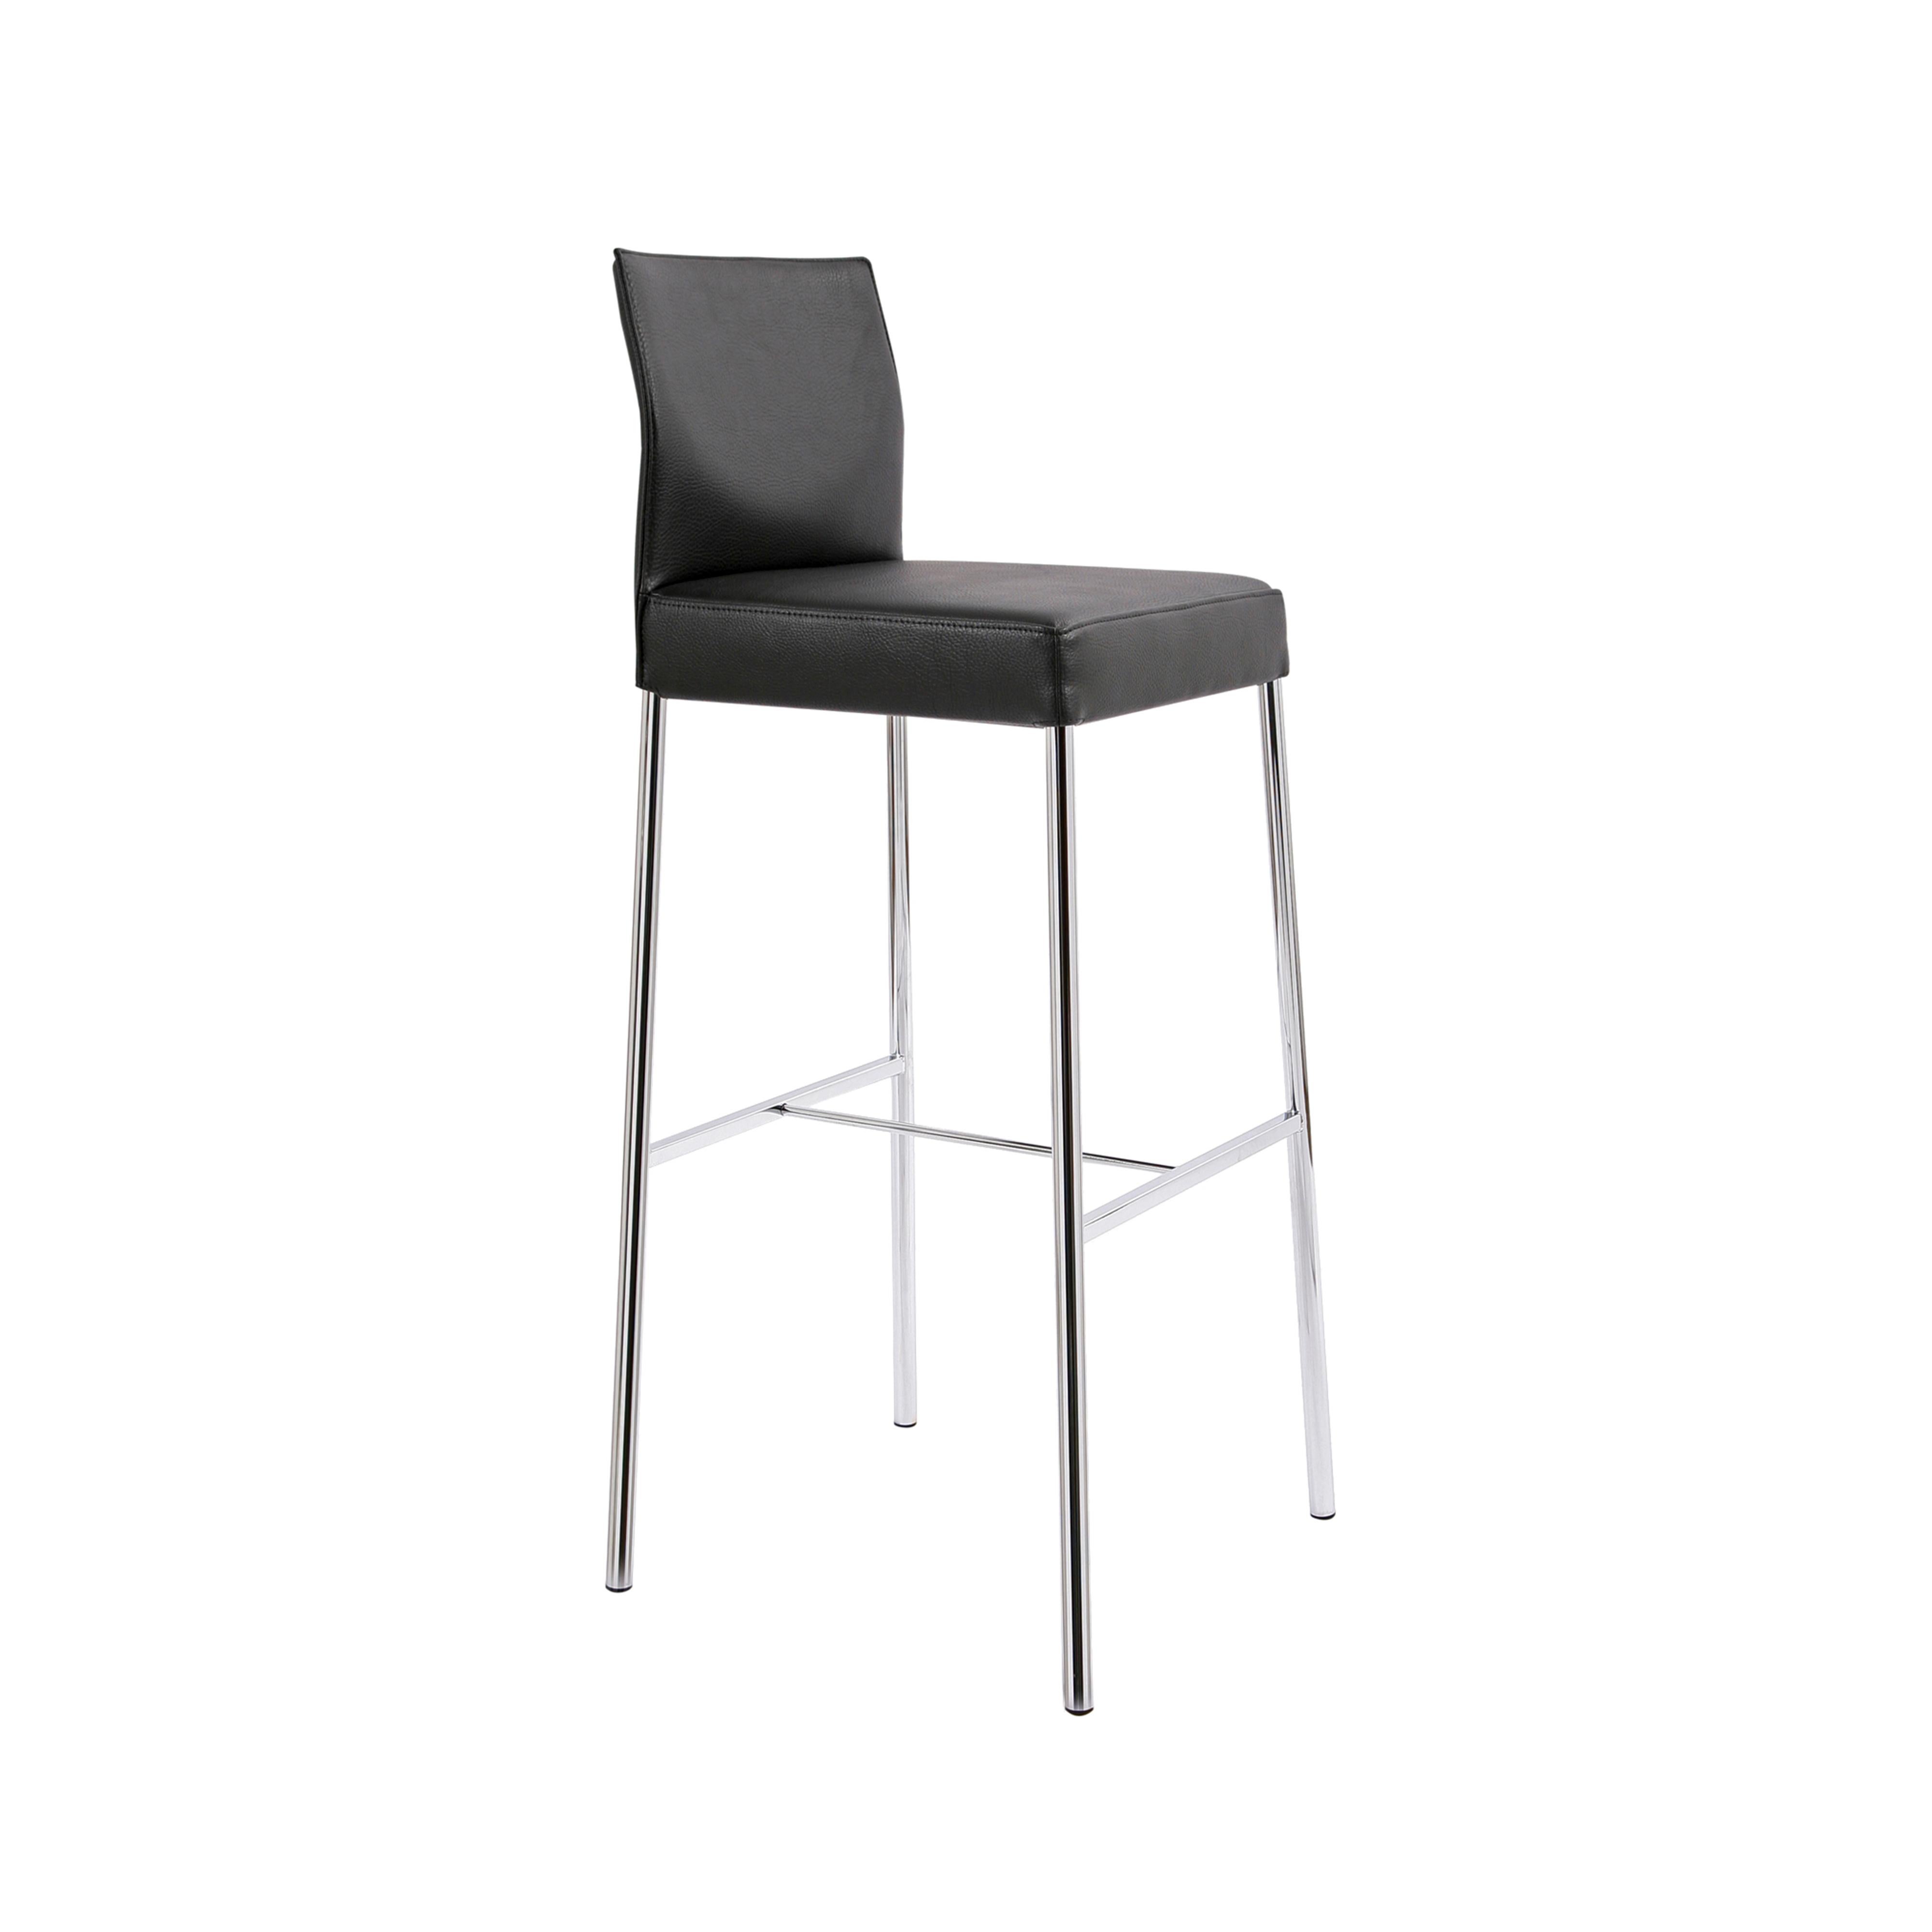 Ein Designkonzept - viele Prototypen: Ob konventionelle Stühle, Katilever oder Barhocker inklusive Luftfederung, GLOOH bietet nicht nur eine große Auswahl und Komfort, sondern auch ein unverwechselbares Design. Kein Wunder, dass GLOOH bereits